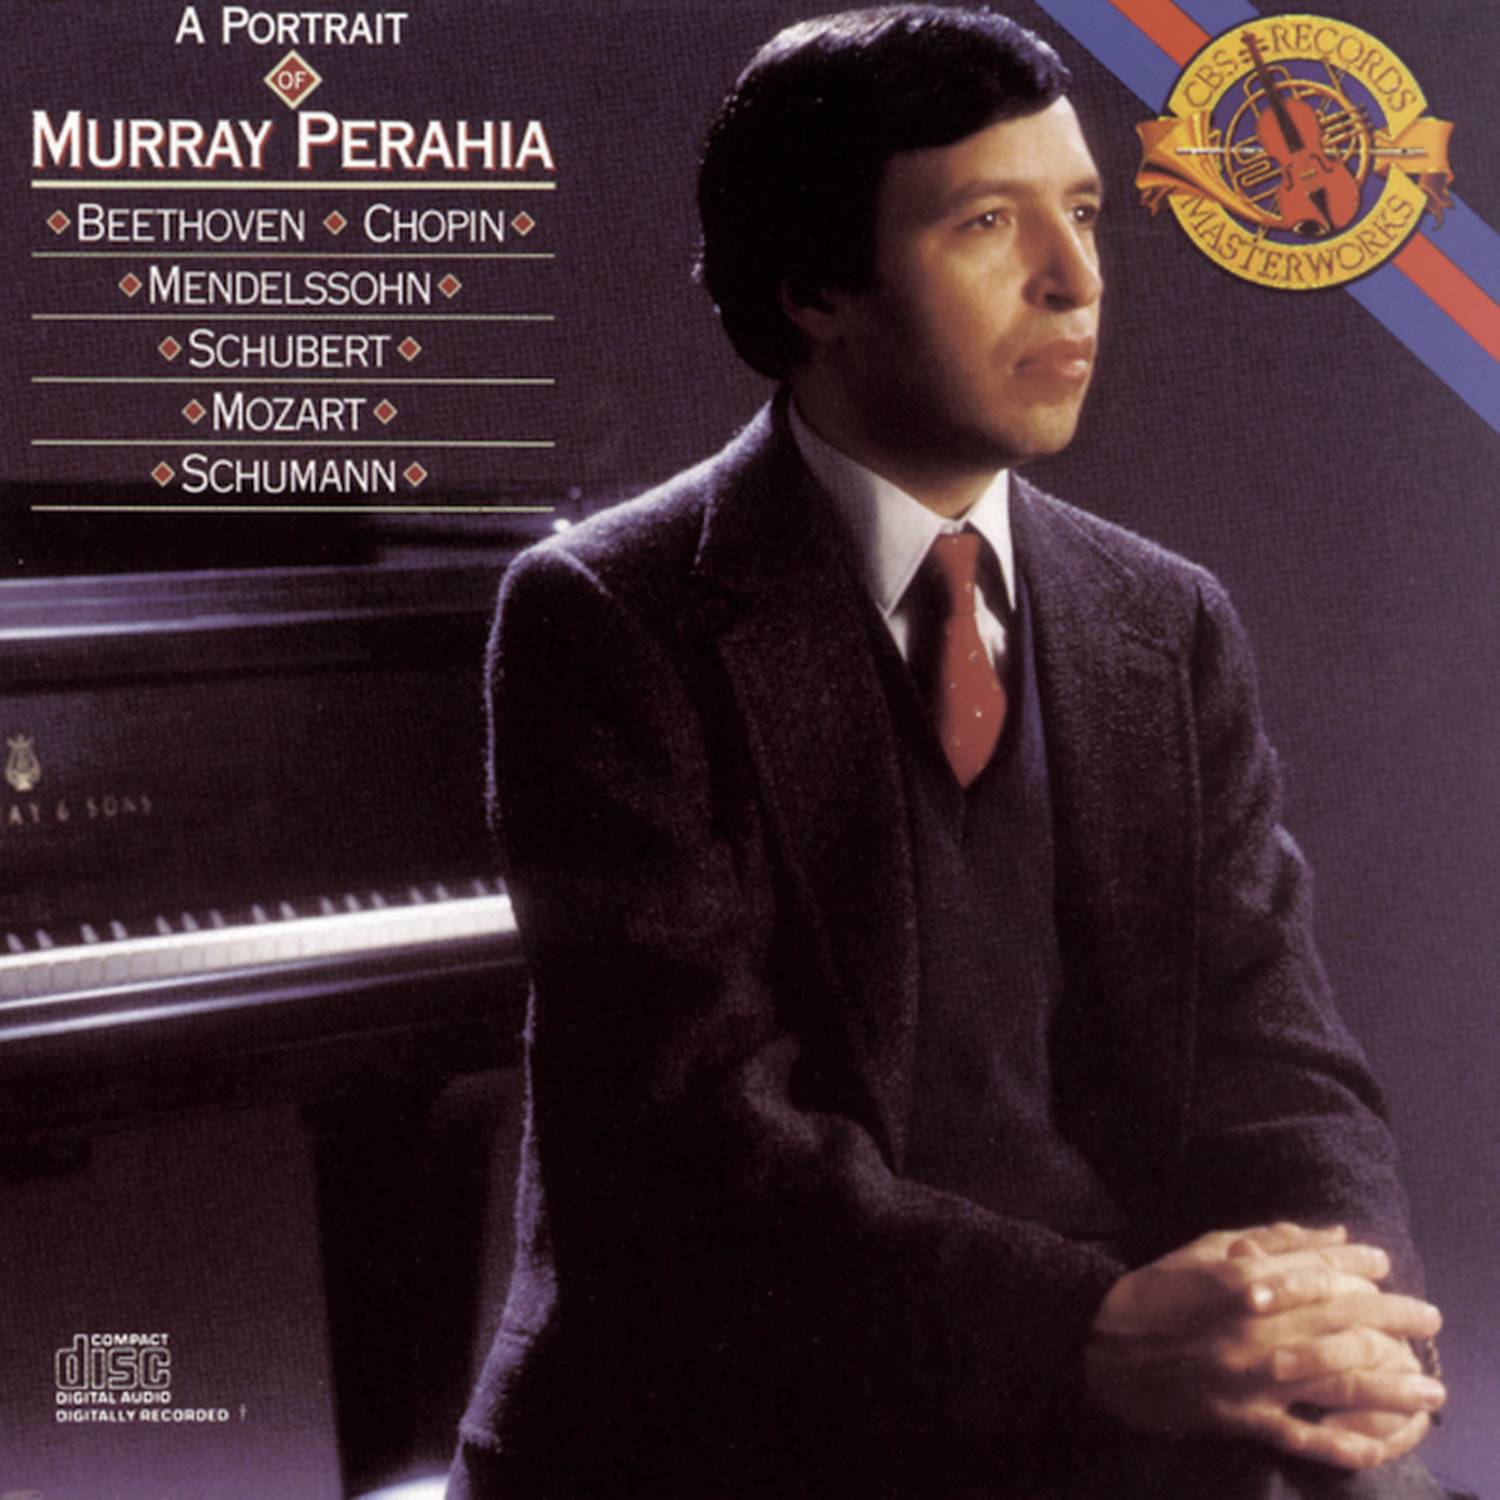 A Portrait of Murray Perahia